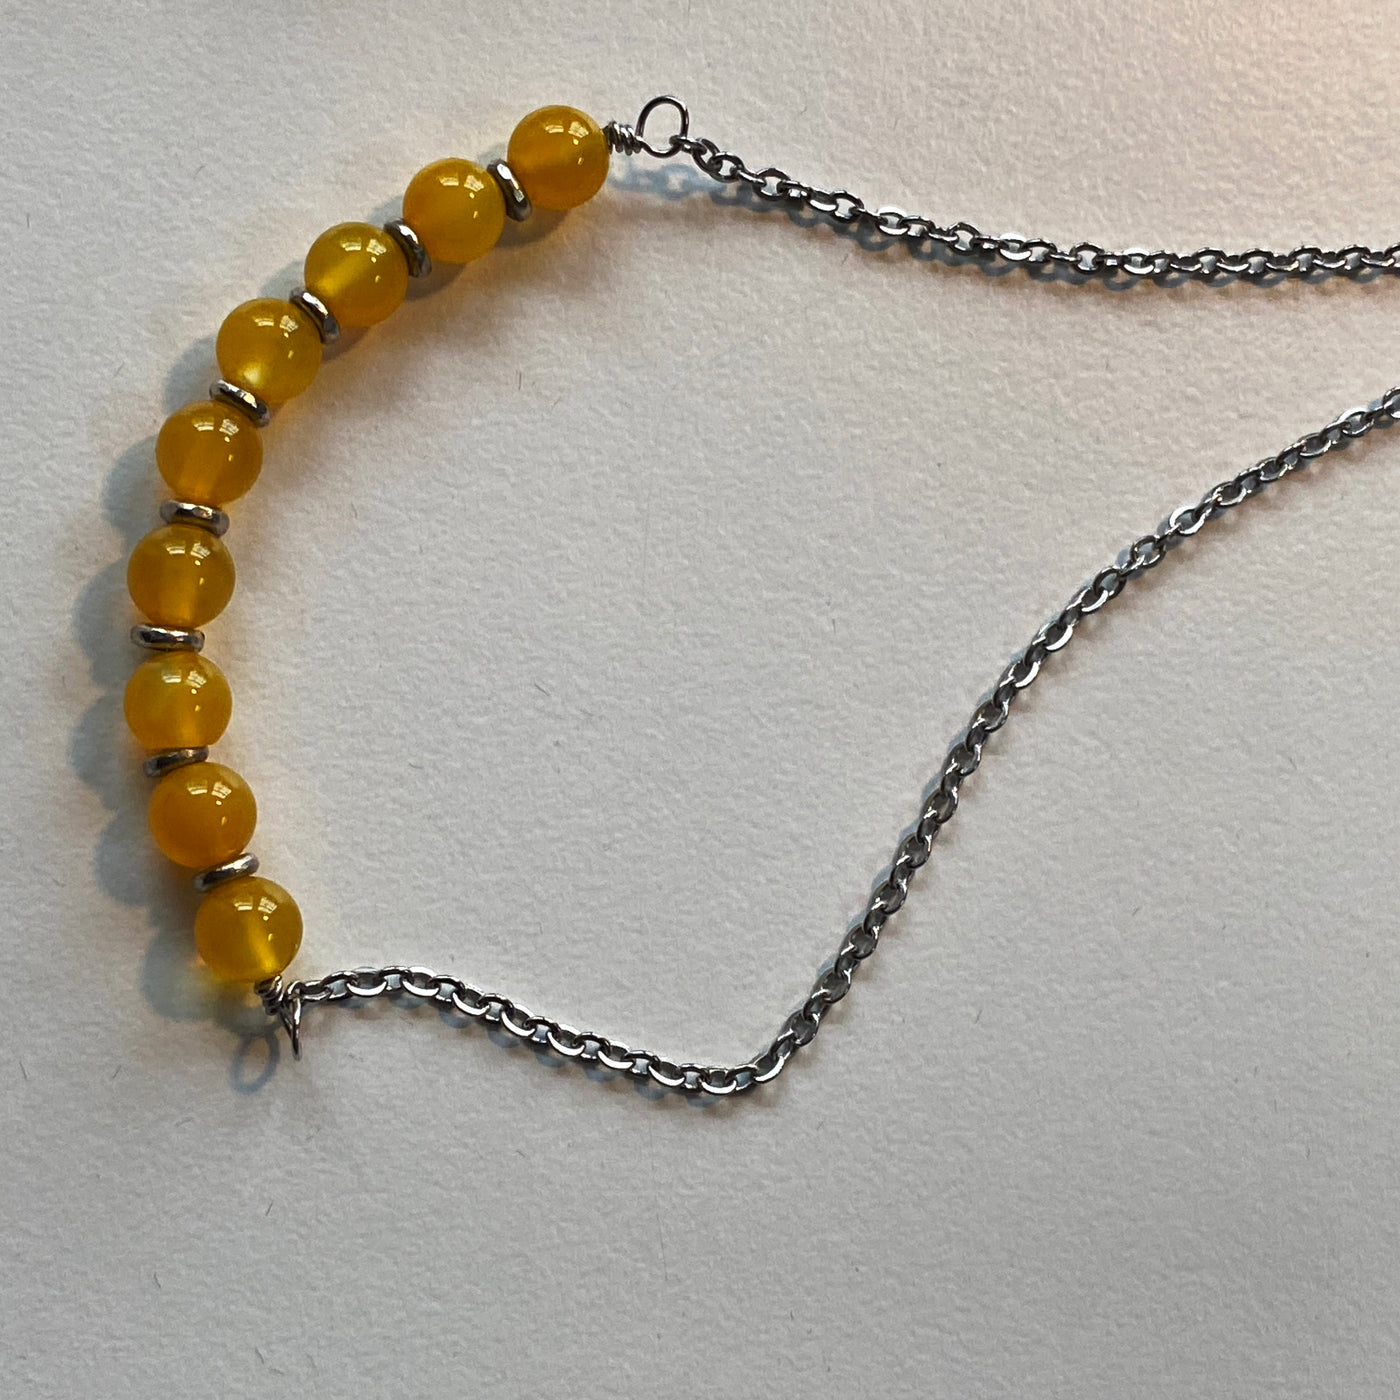 Halskette aus gelbem Achat und Silber an einer silbernen Kette. Liniensammlung